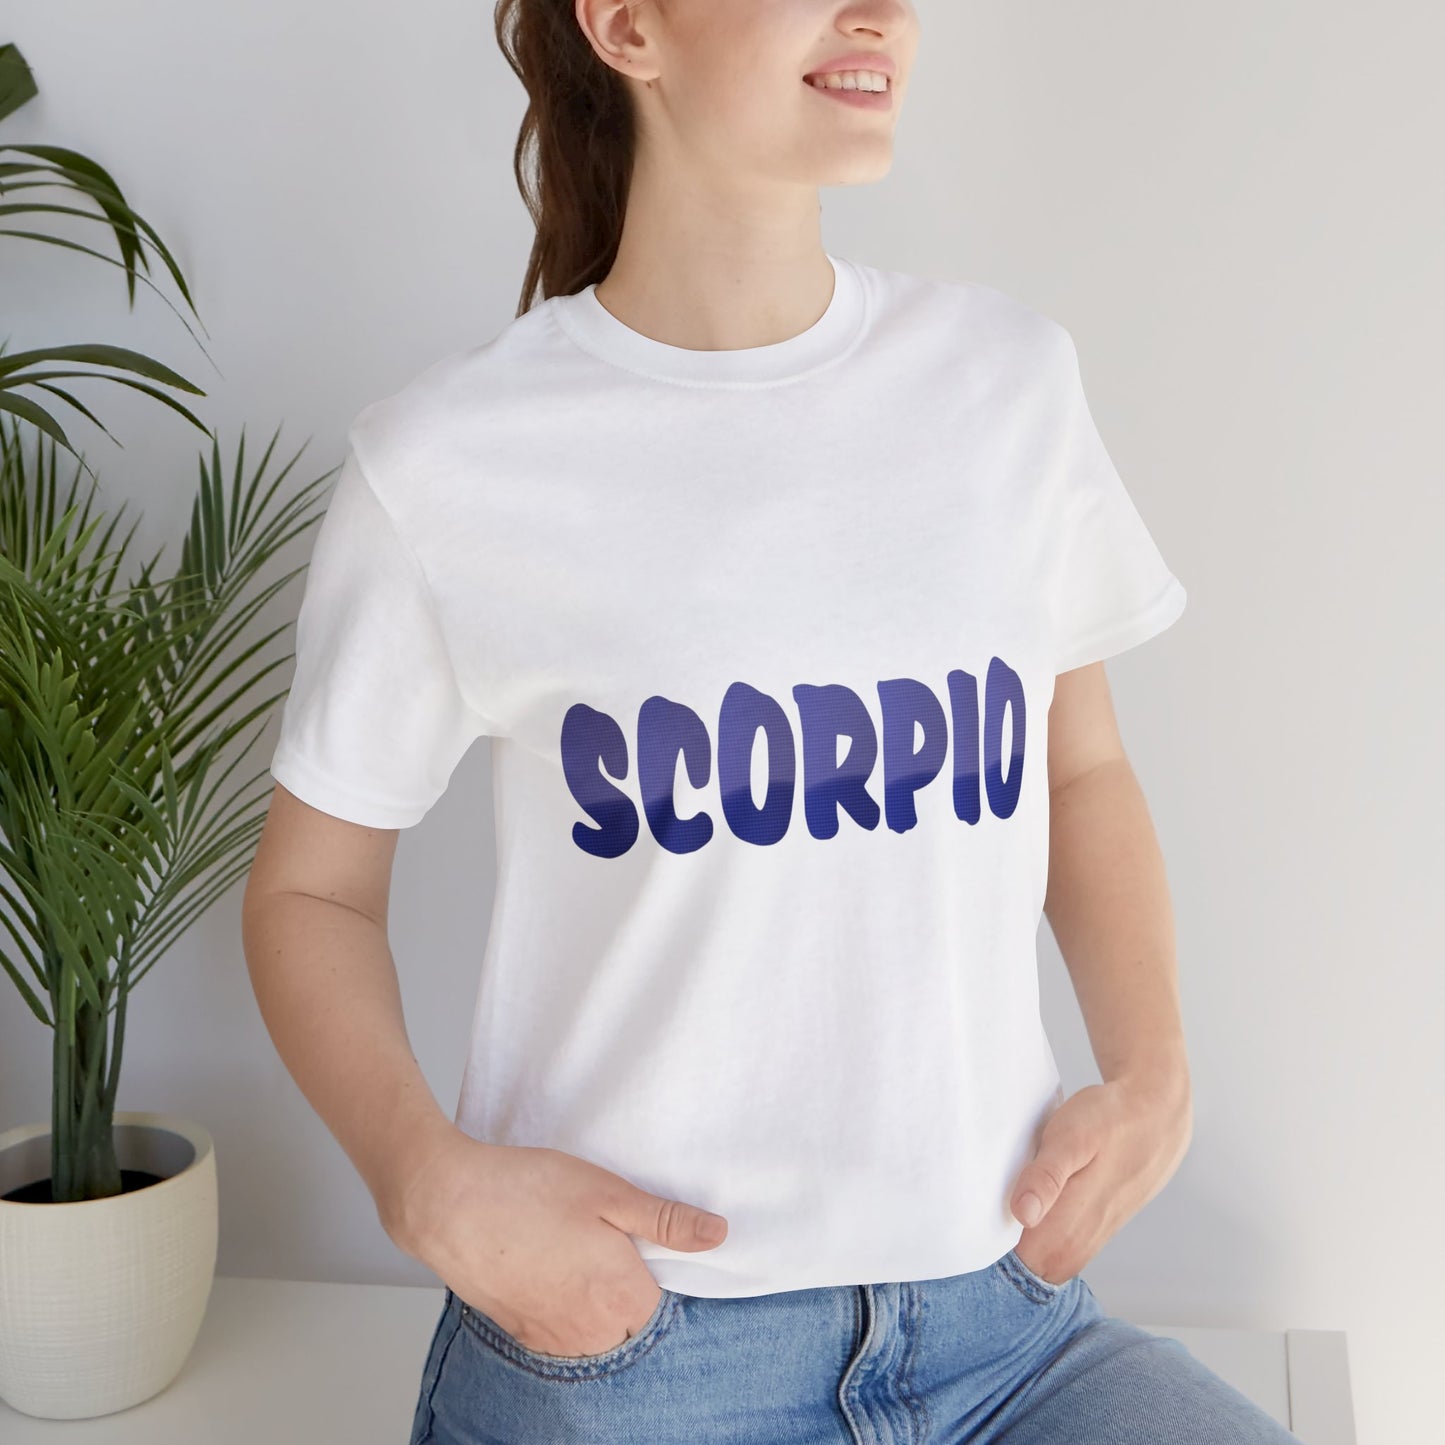 Scorpio T-shirt word